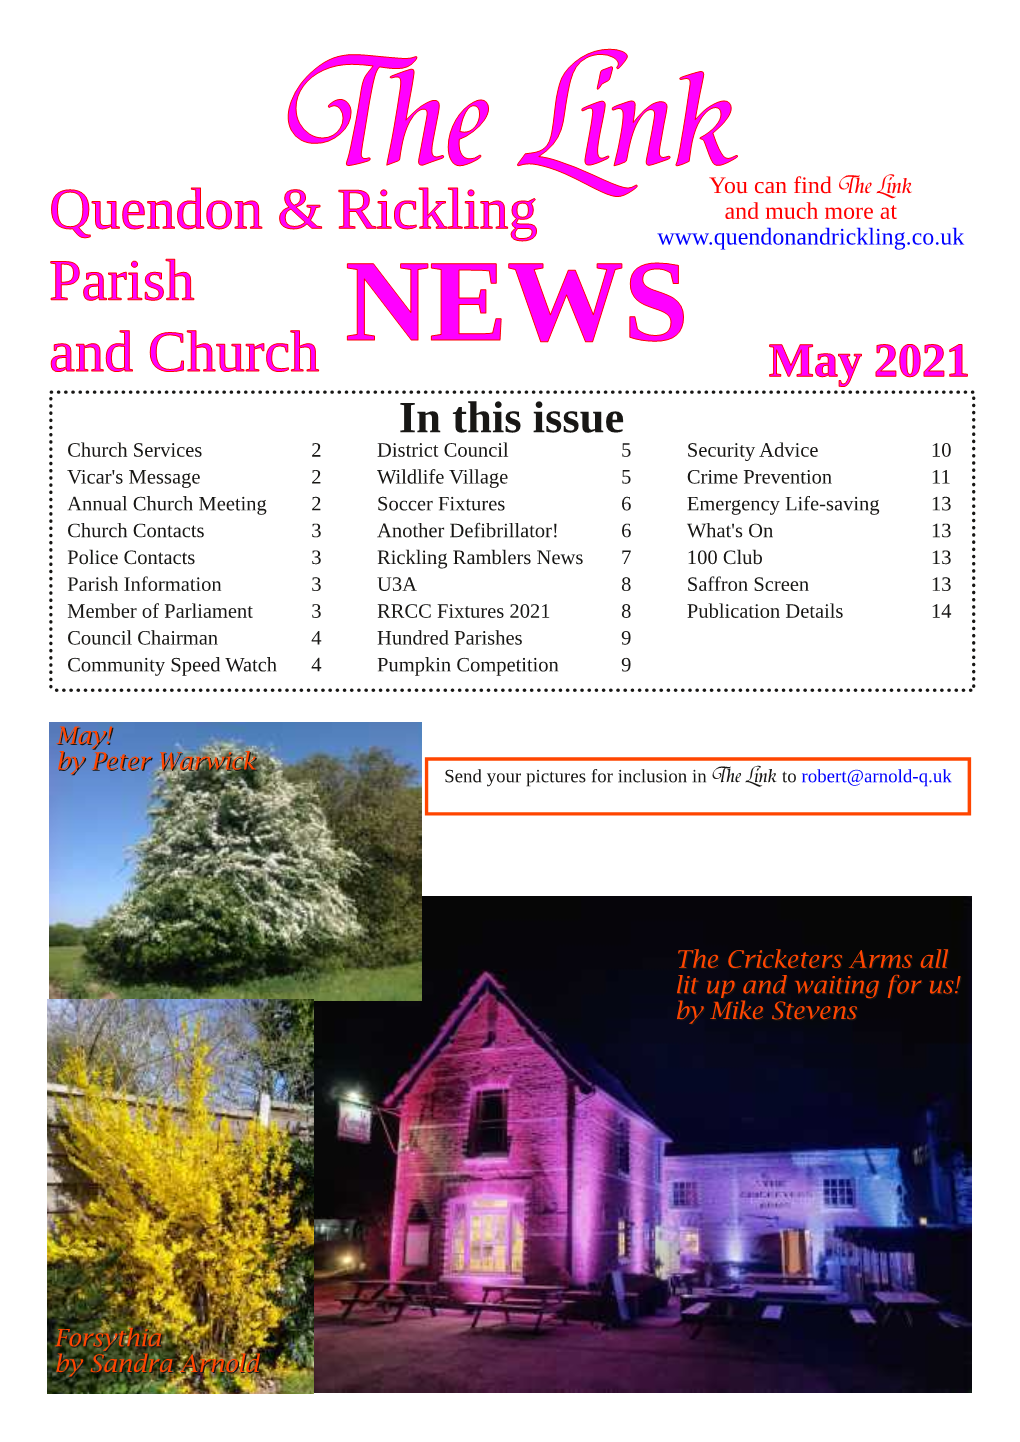 Quendon & Rickling Parish and Church